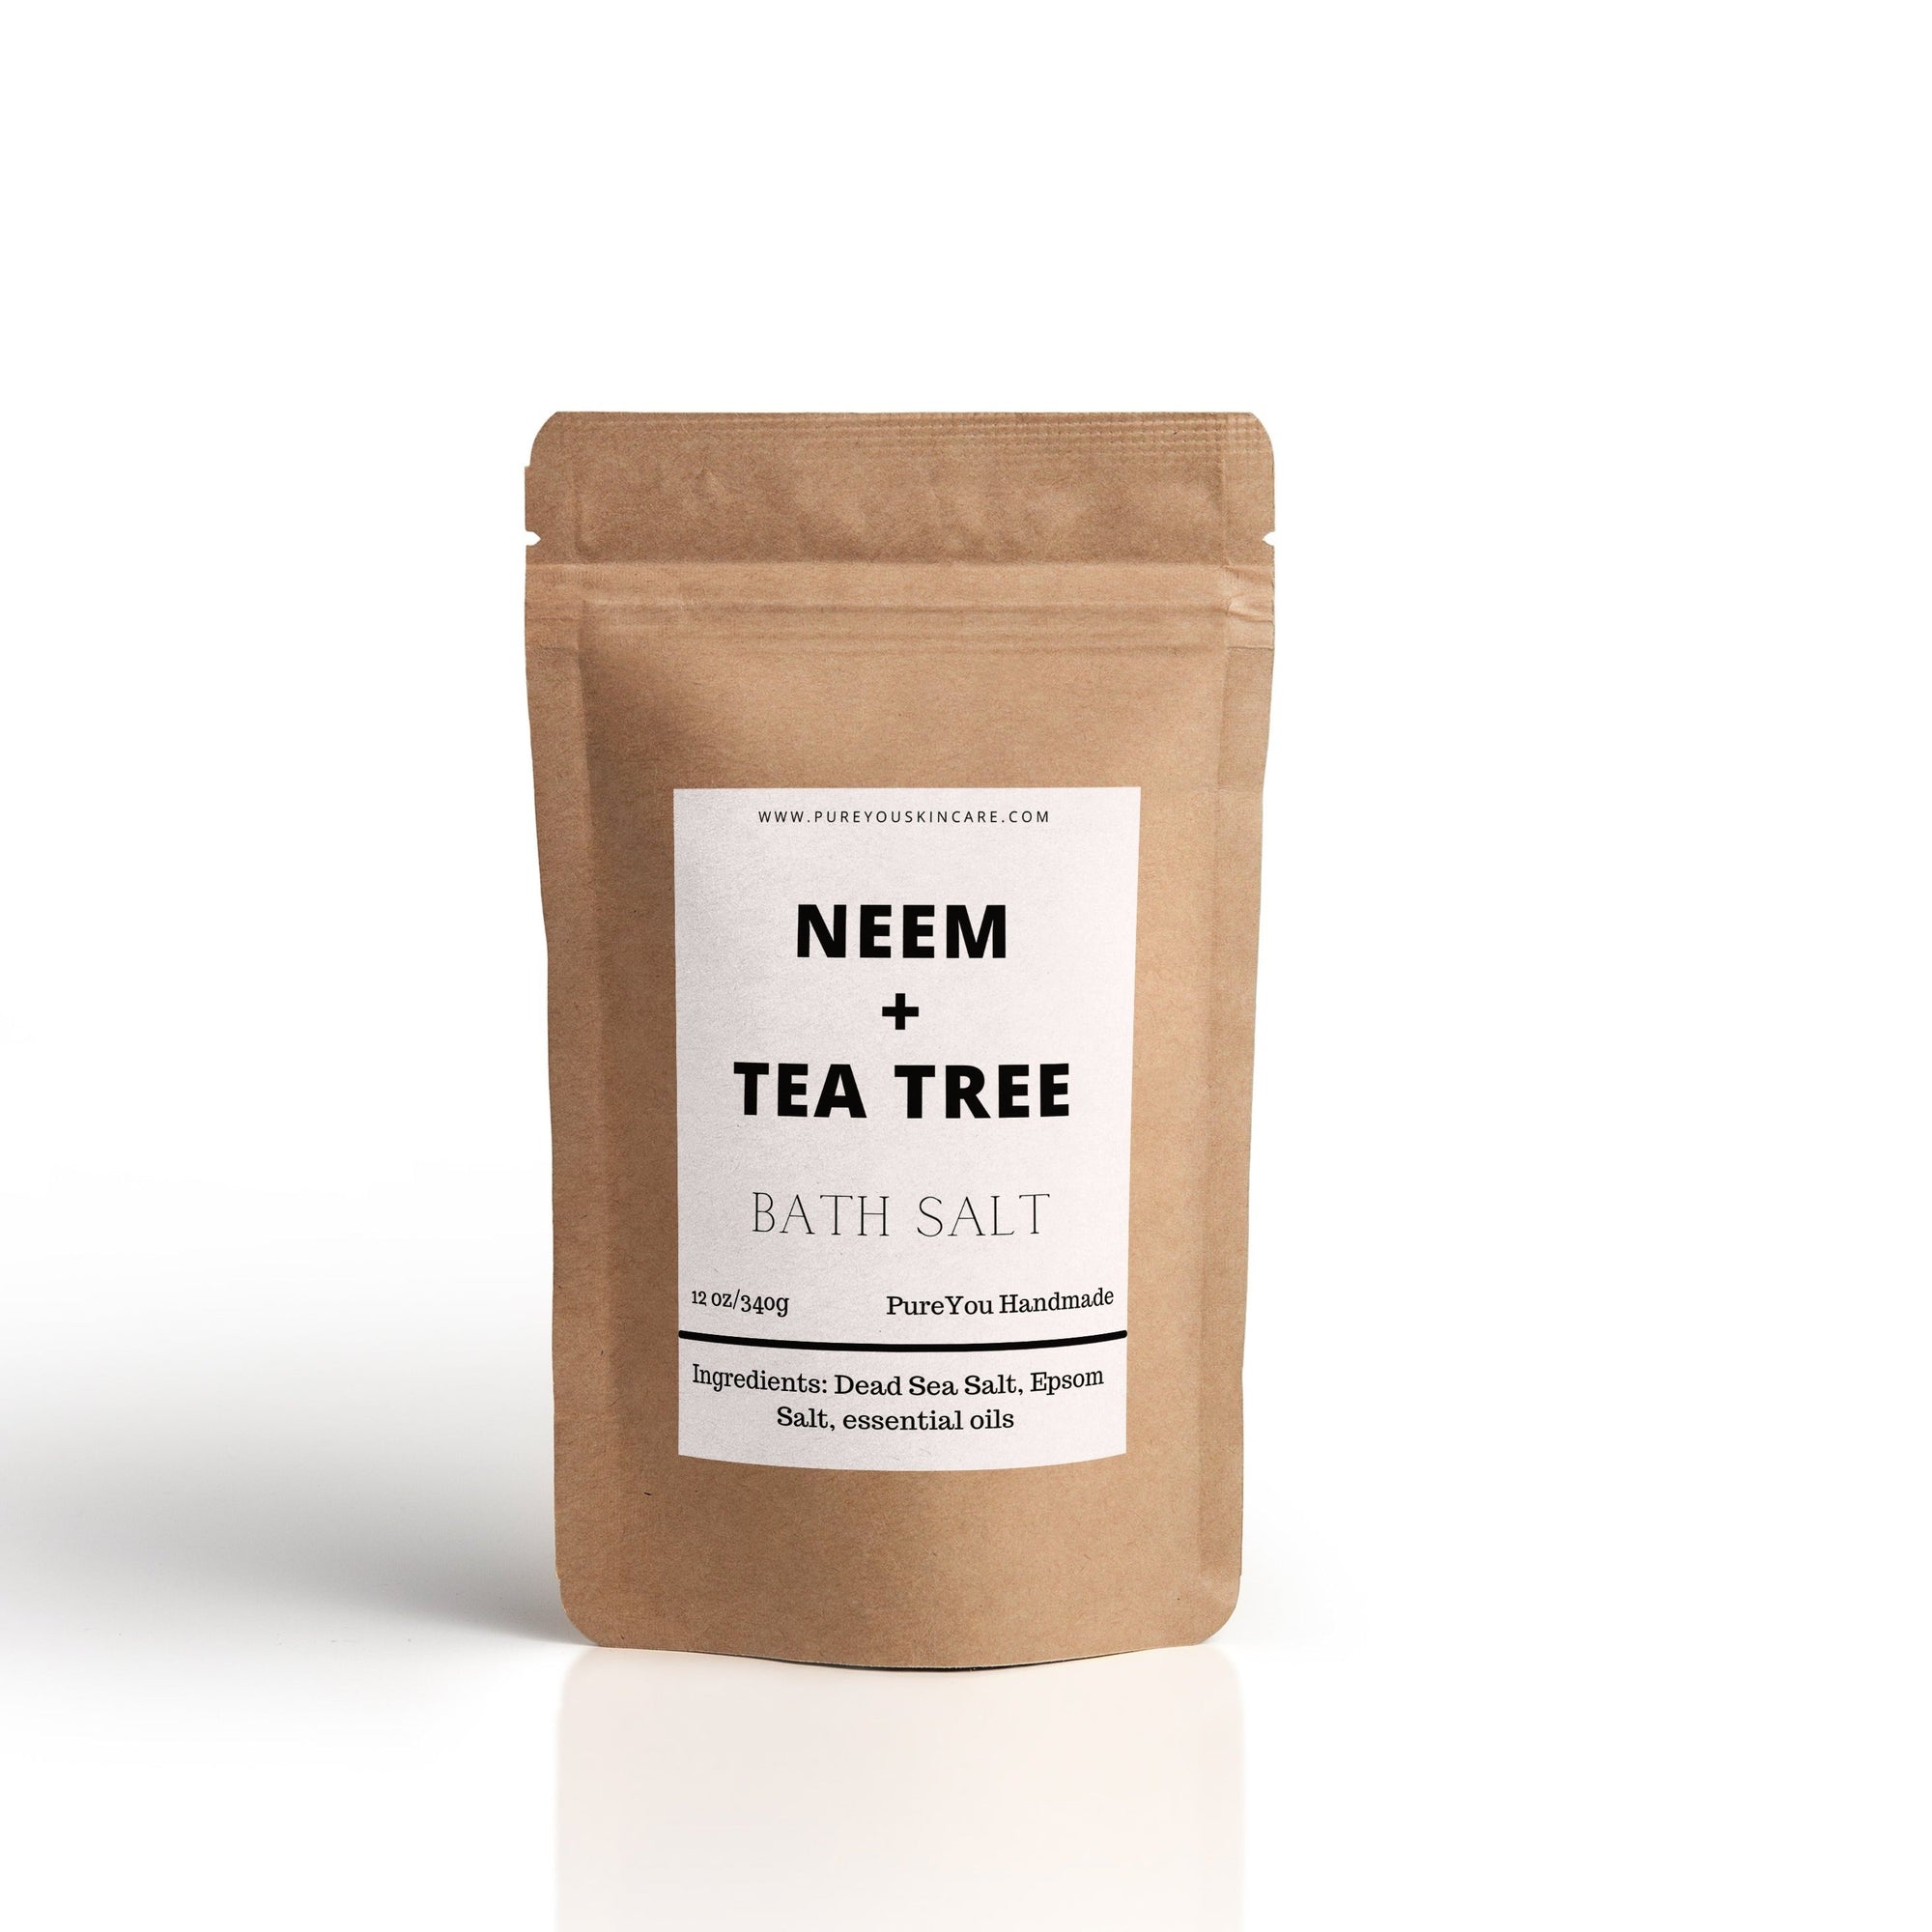 Neem and Tea Tree Bath Salt